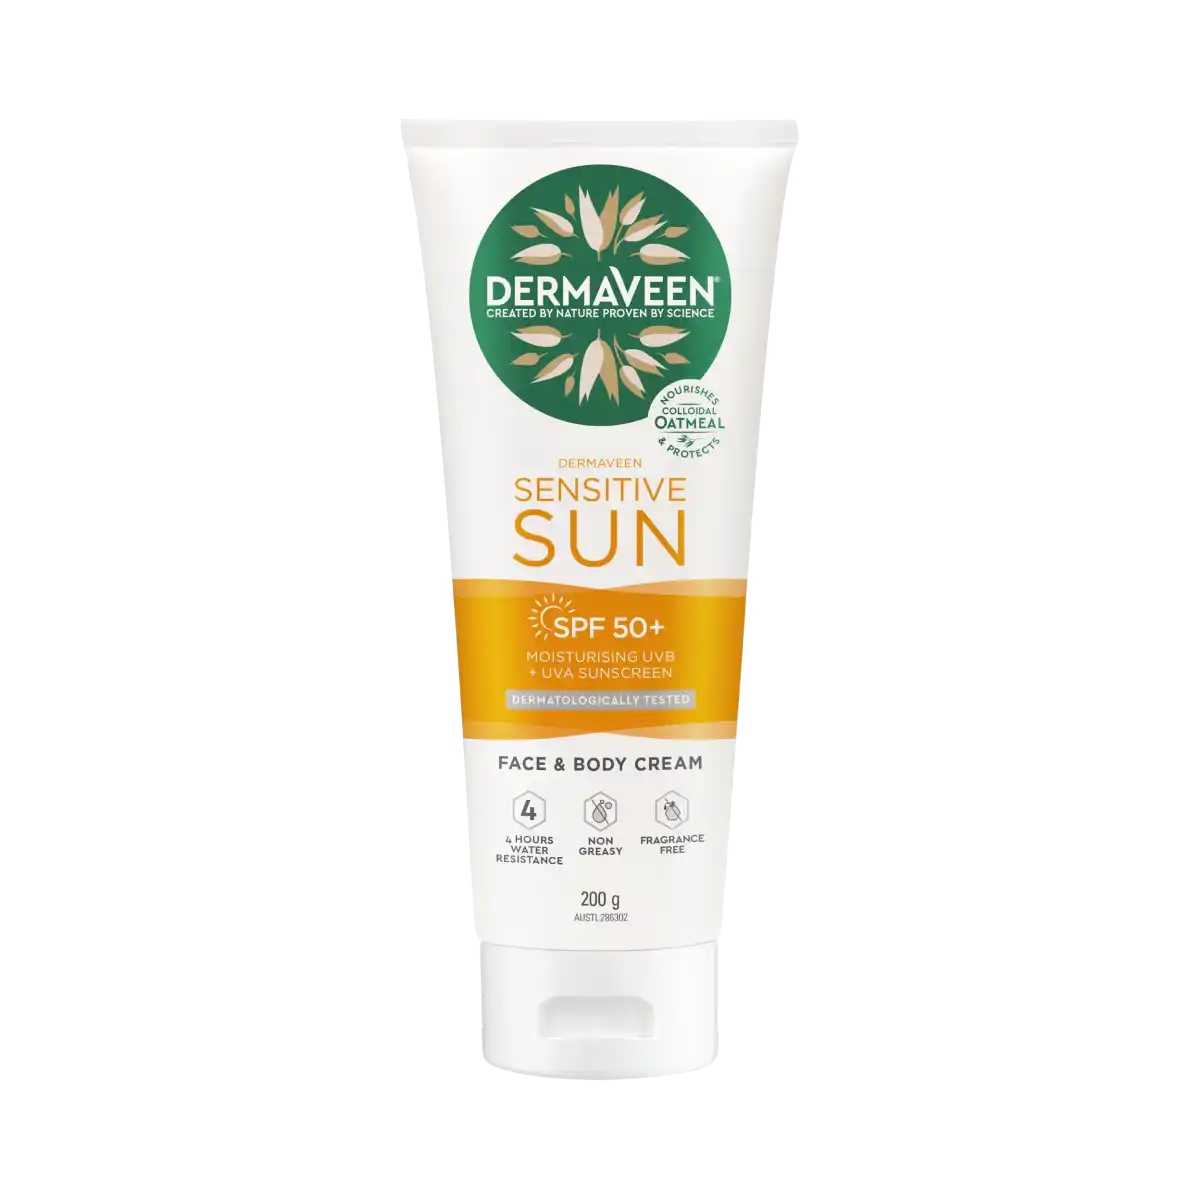 Sensitive Sun SPF50+ Moisturising UVB + UVA Sunscreen 200g